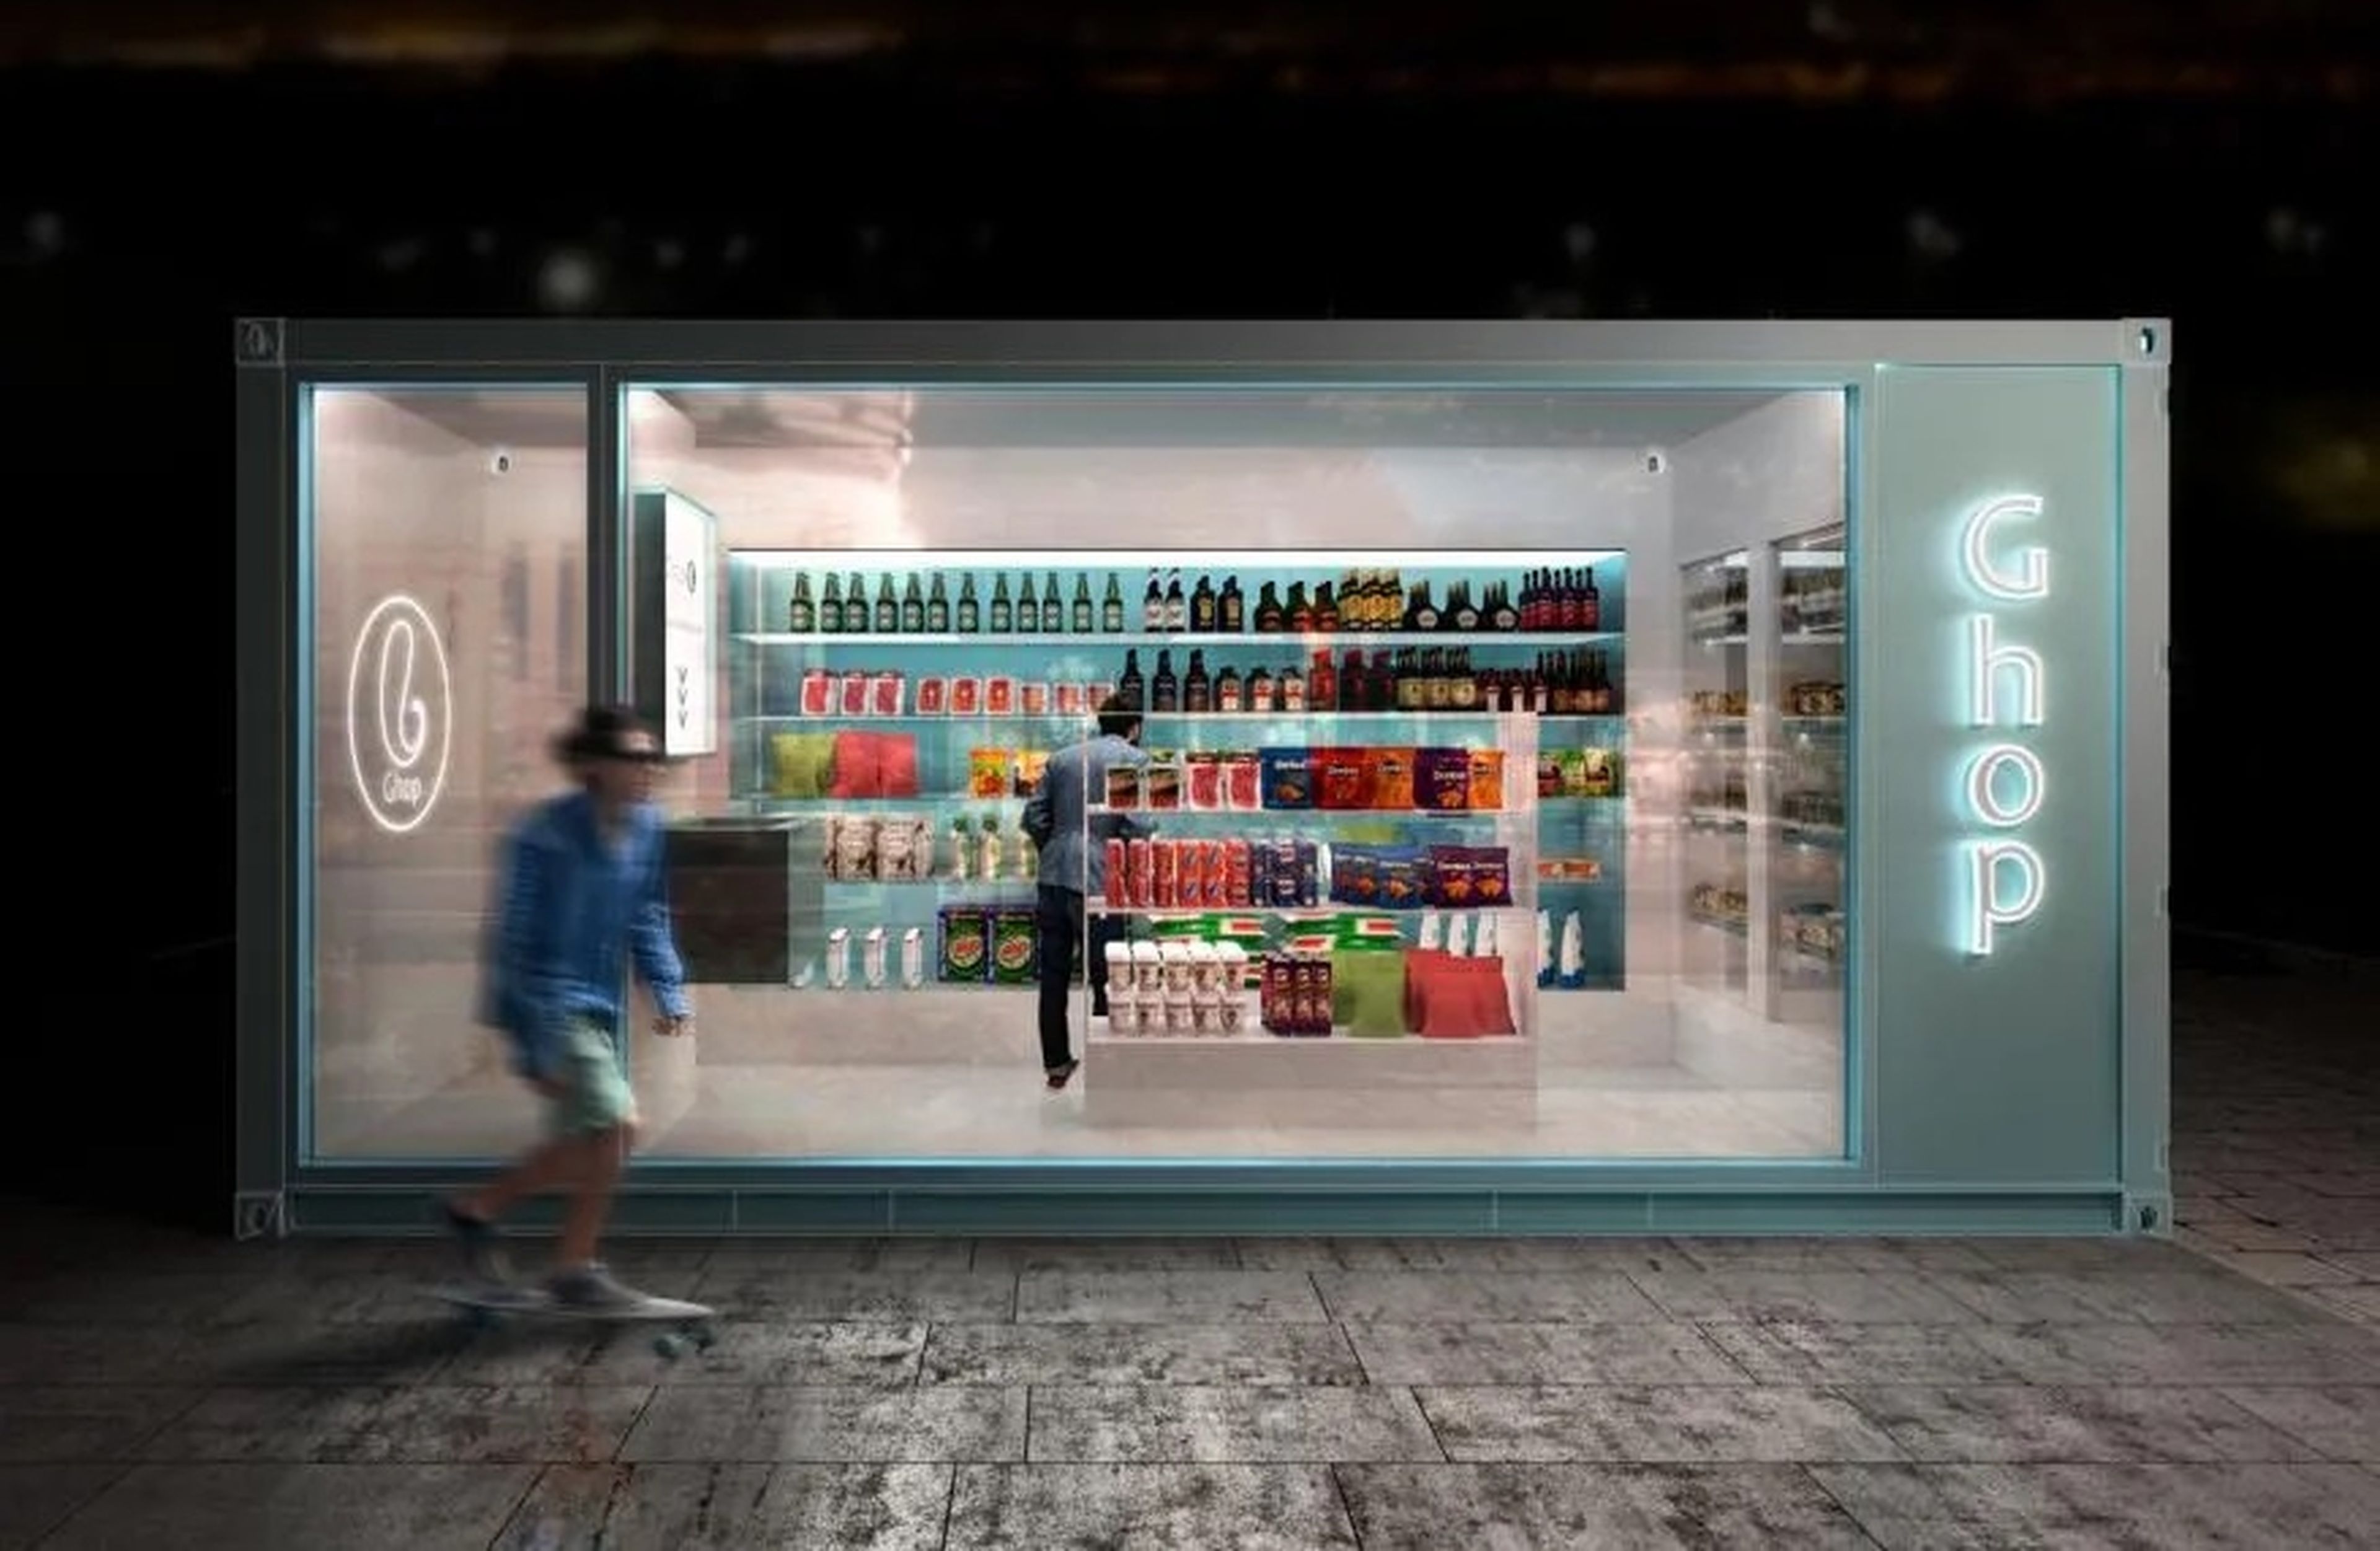 Ghop, el supermercado inteligente sin empleados creado en España, abre en Madrid